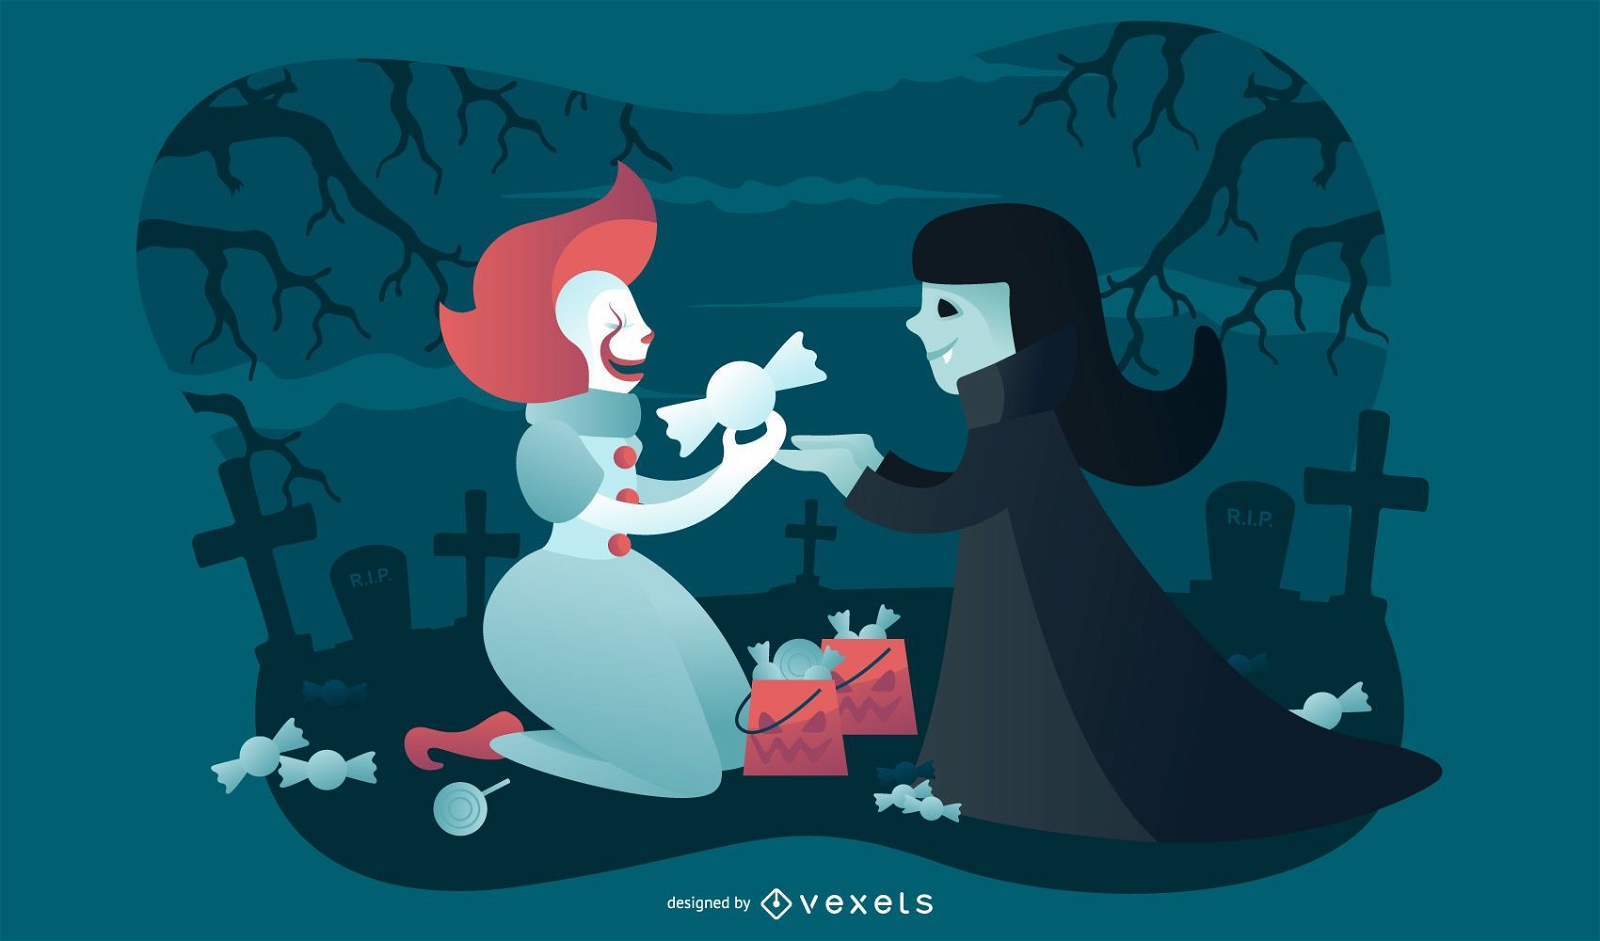 Clown and vampire halloween illustration